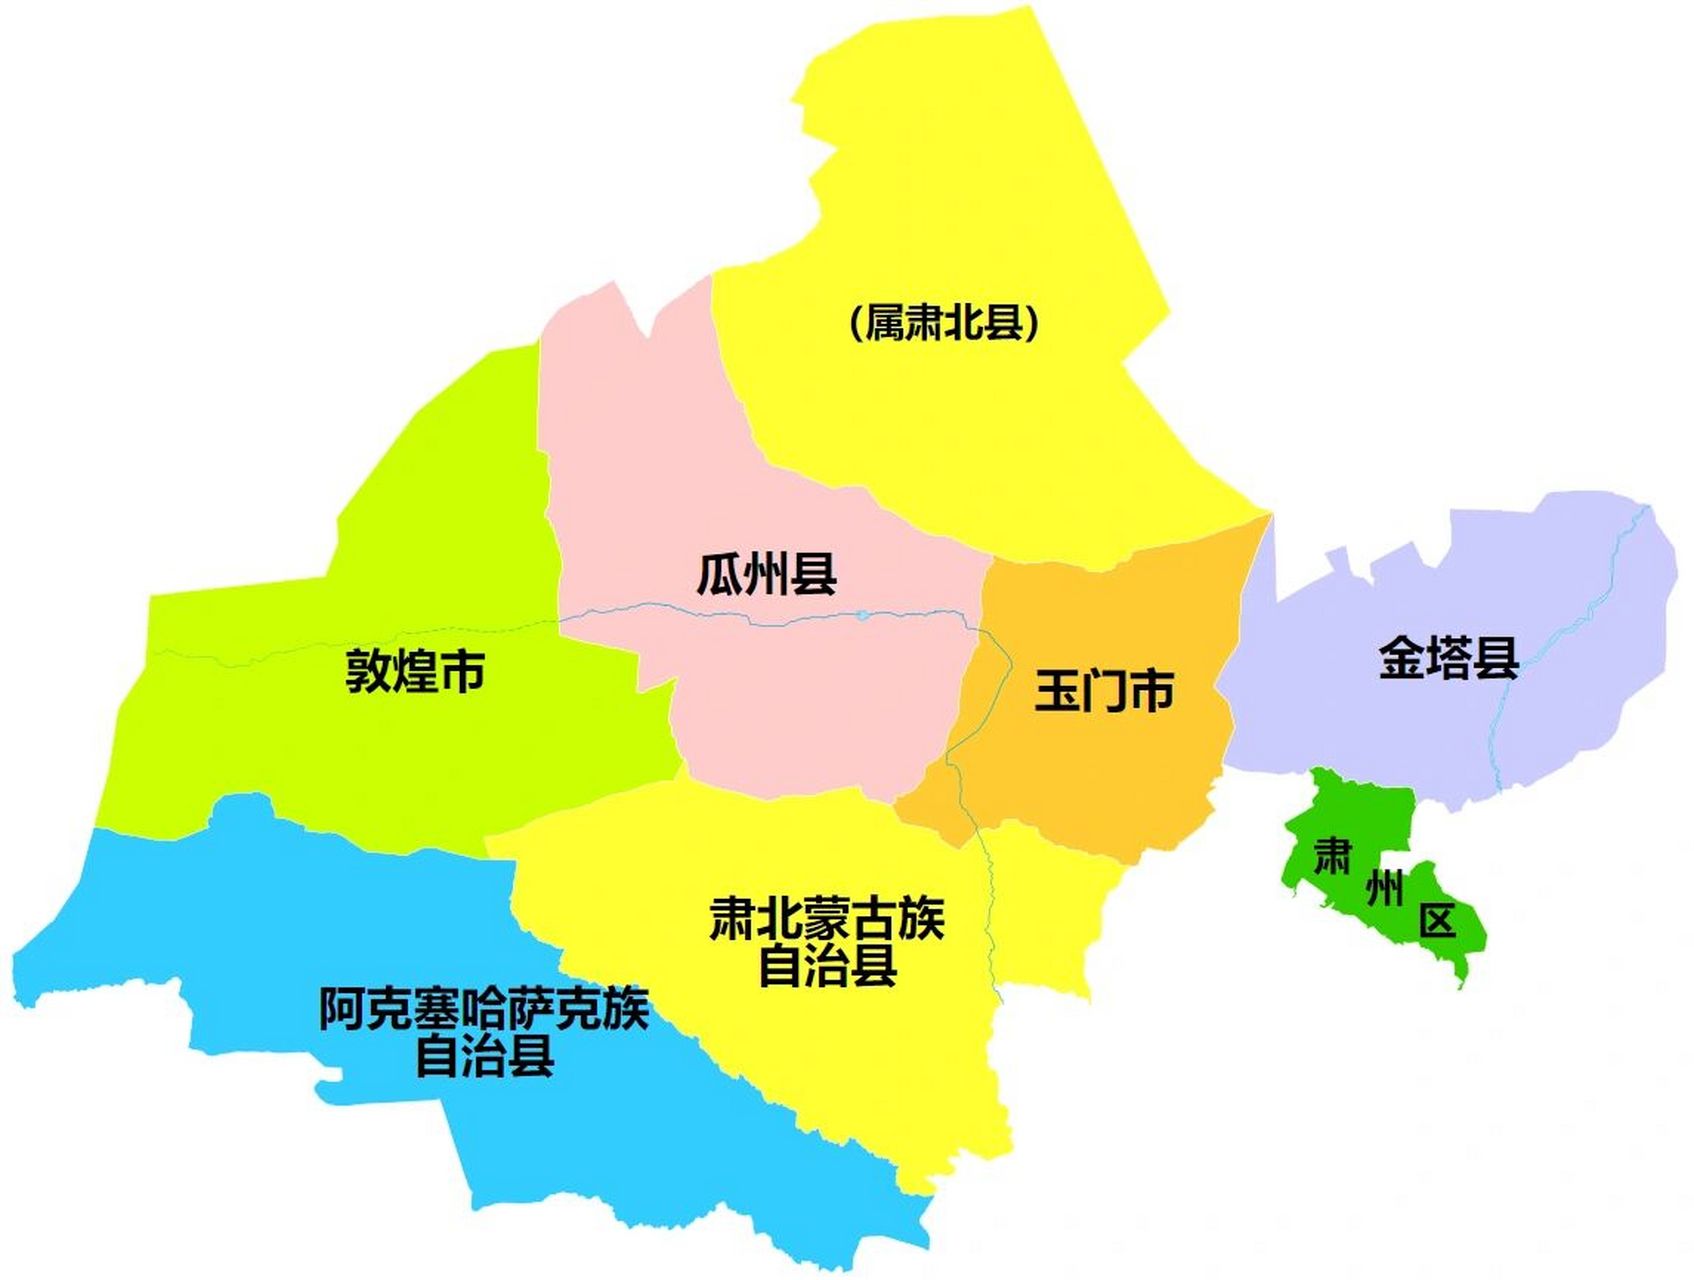 酒泉行政区划 酒泉市,甘肃省辖地级市,总面积为19